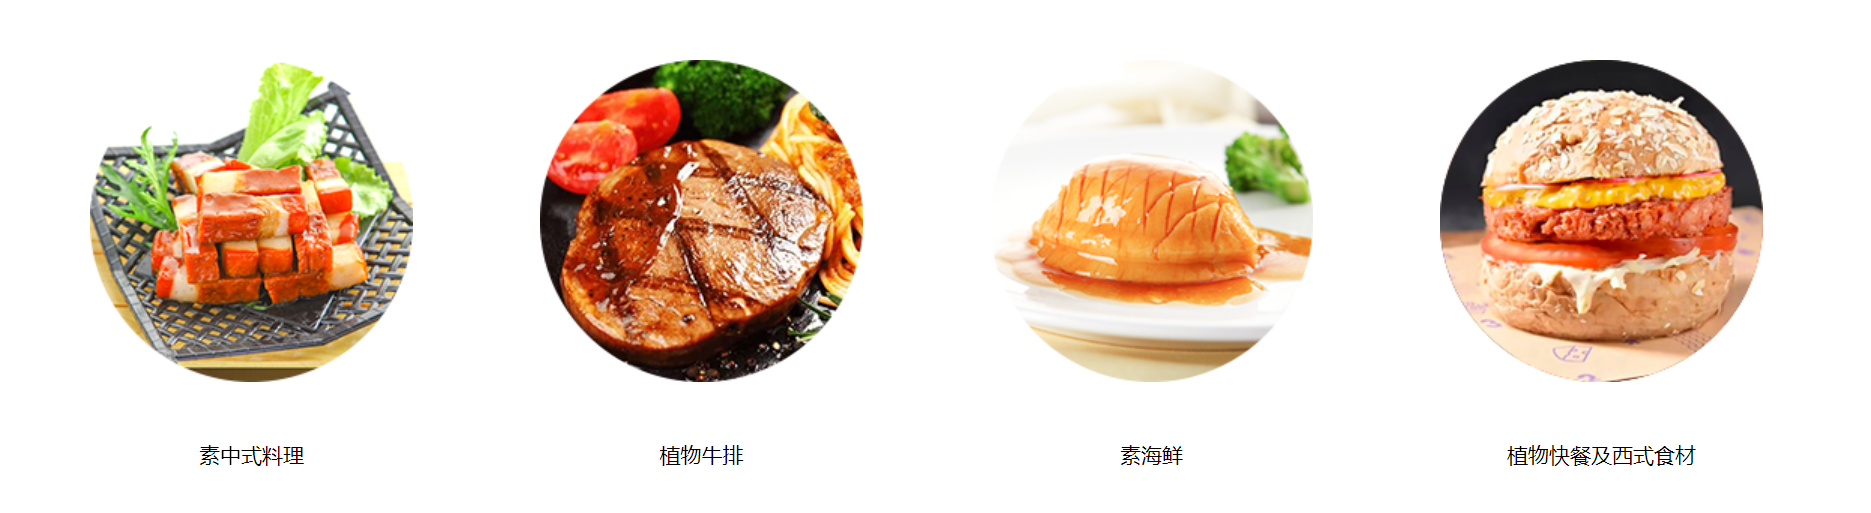 肯德基变“绿”餐企在中国卖植物肉前景几何？